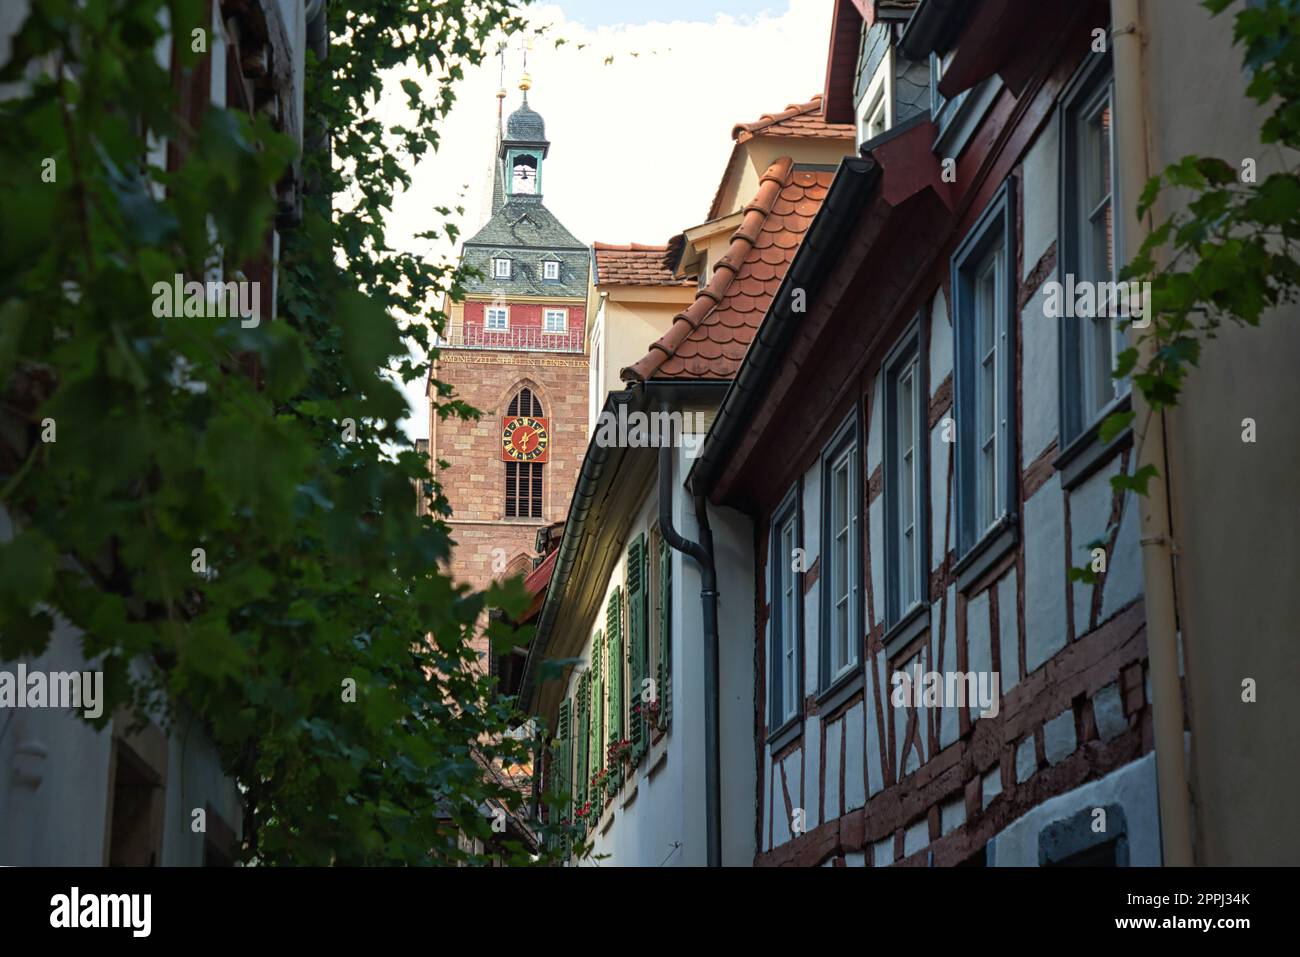 Neustadt an der Weinstrasse, Renania-Palatinato, Germania - 01 luglio 2022: La torre della Stiftskirche St Ã„gidius oltre le case in legno della città vecchia. Foto Stock